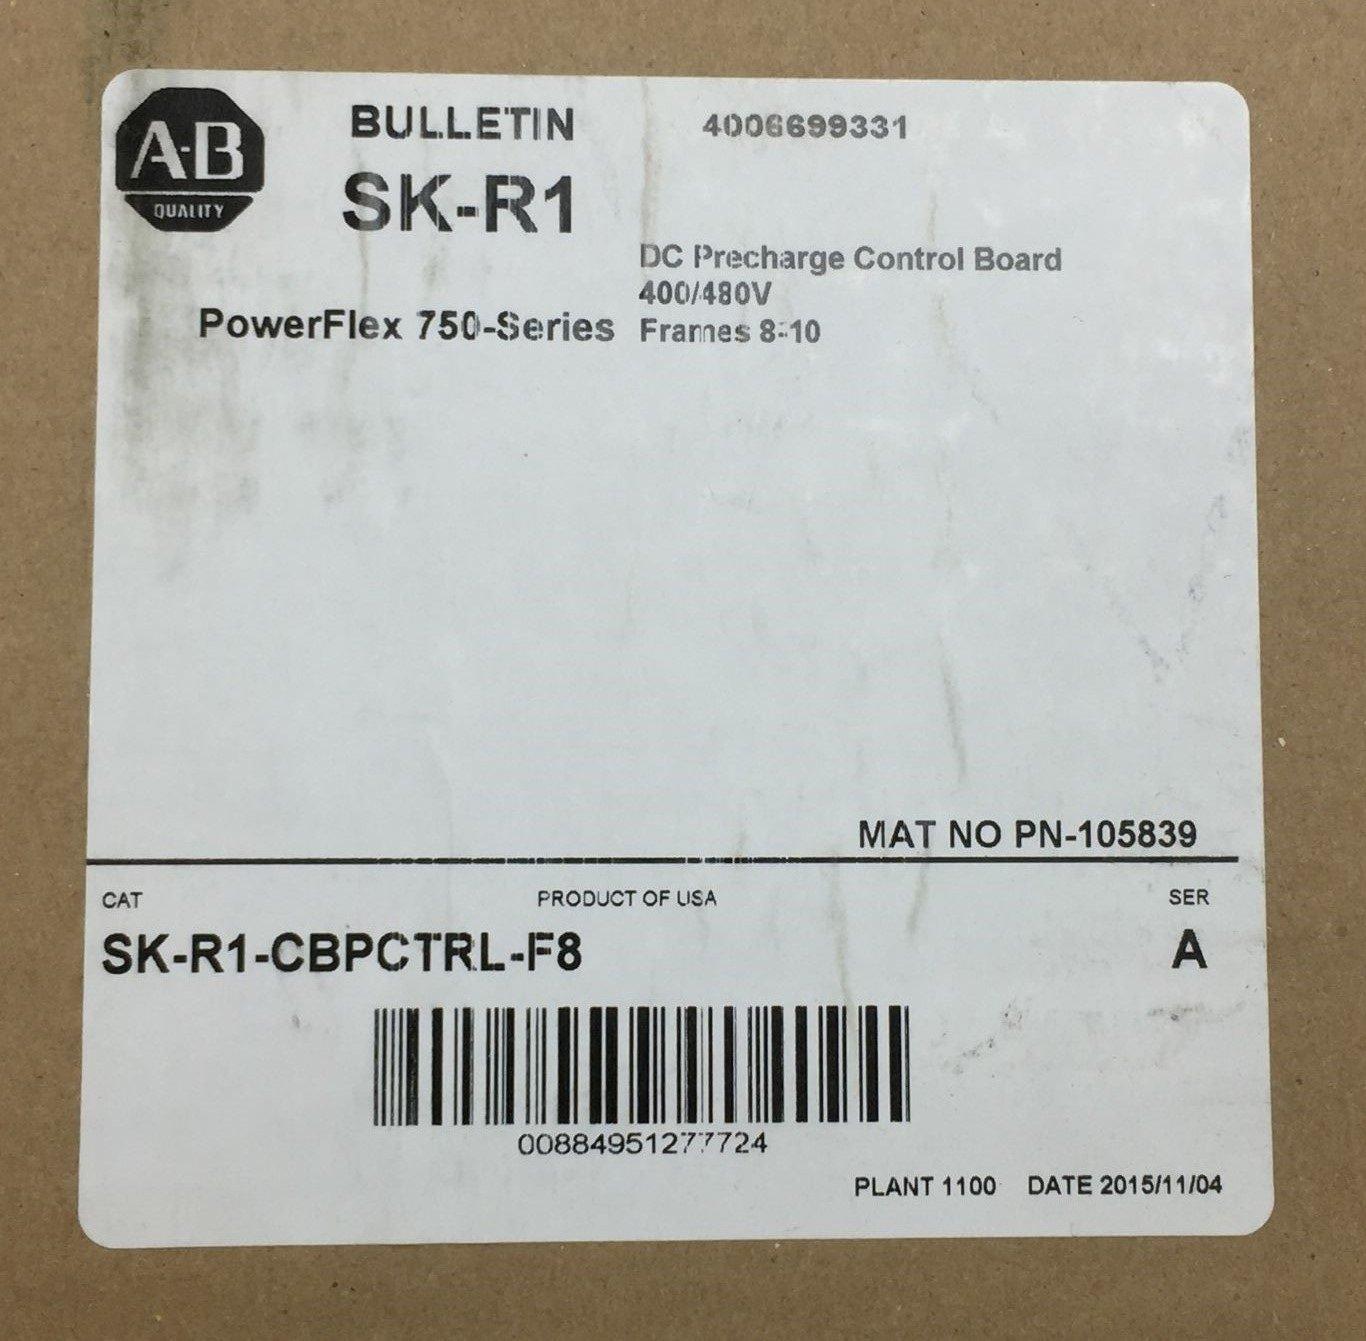 NEW ALLEN BRADLEY SK-R1-CBPCTRL-F8 FACTORY SEALED POWERFLEX 750 BOARD SER A 